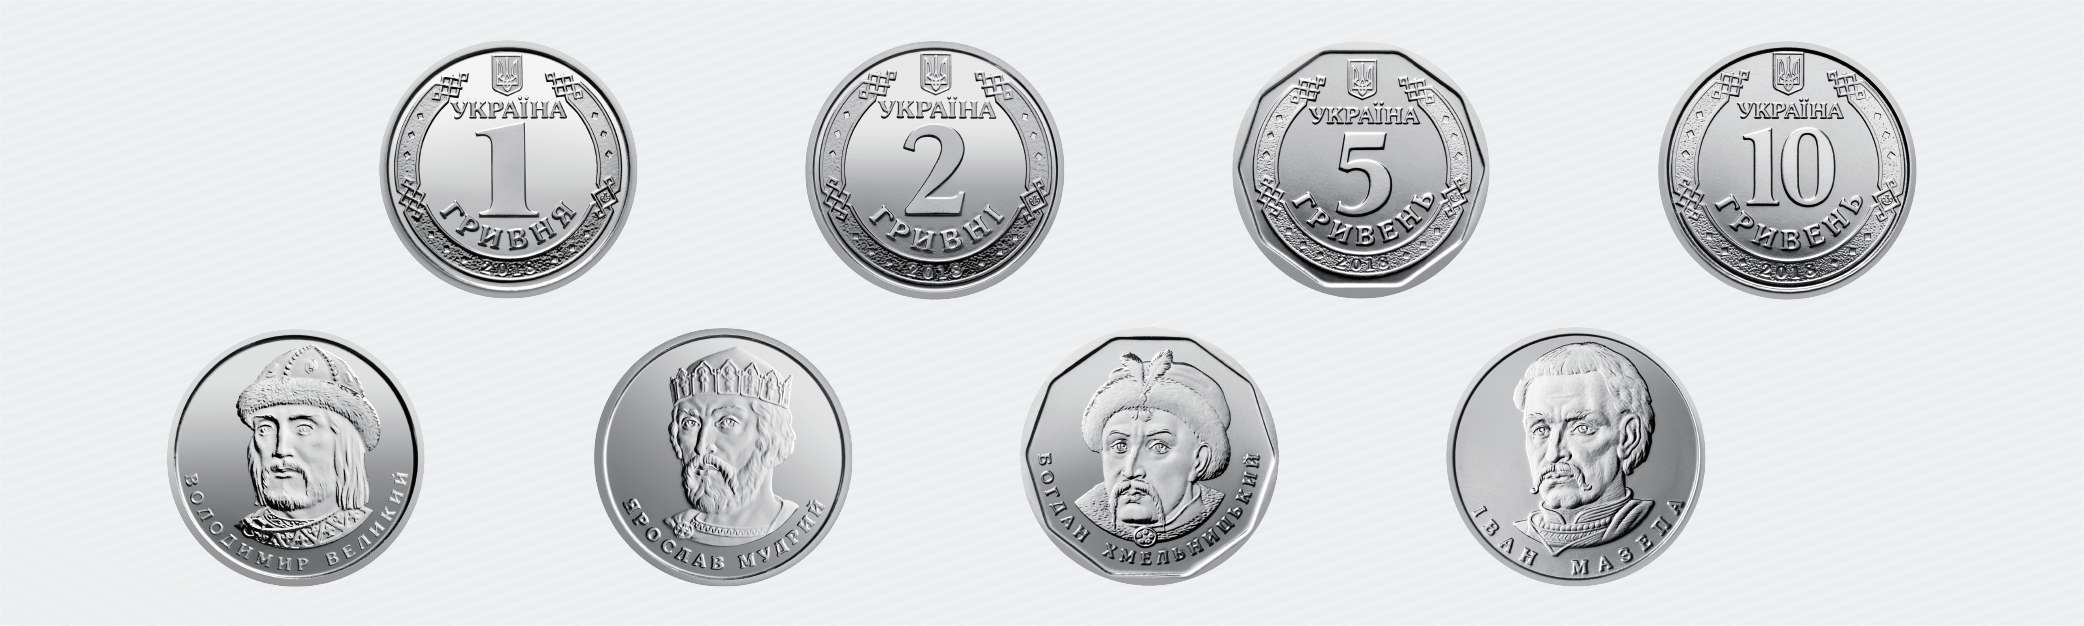 Нацбанк презентував нові обігові монети номіналами 1, 2, 5 та 10 гривень